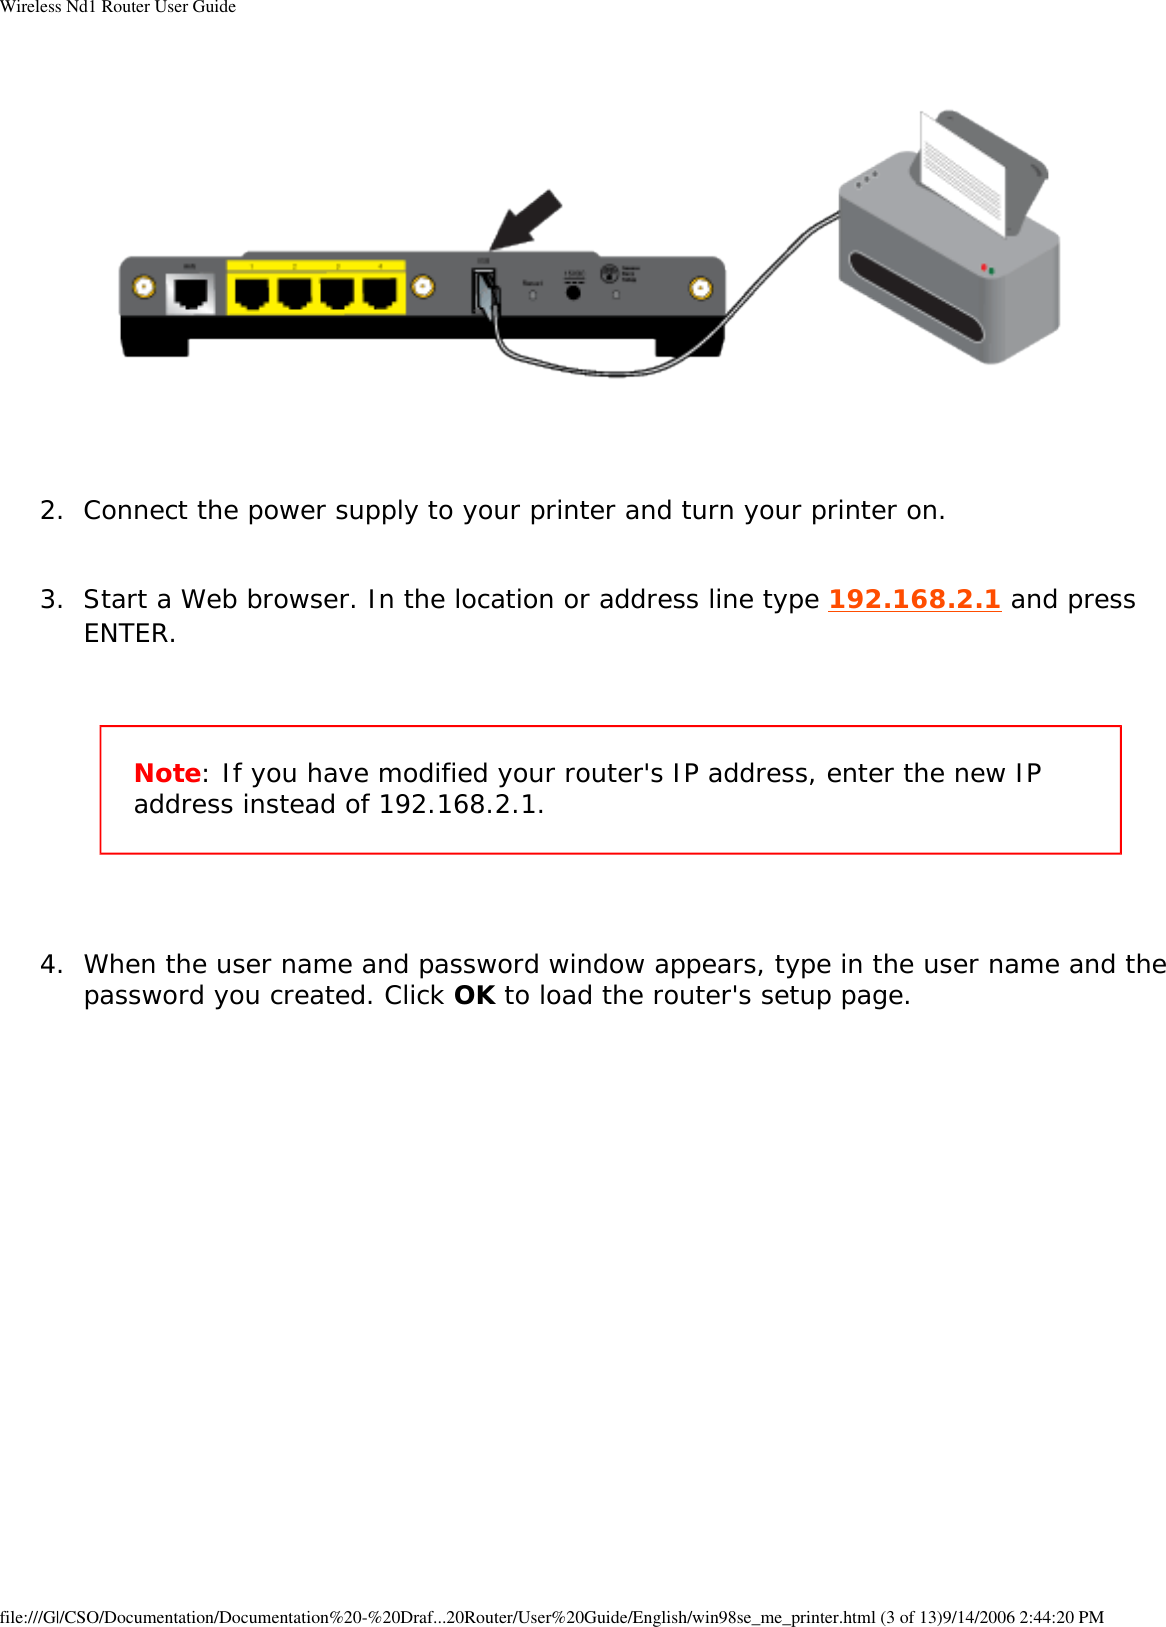 Page 37 of GemTek Technology R950630GN USRobotics Wireless Nd1 Router User Manual Wireless Nd1 Router User Guide